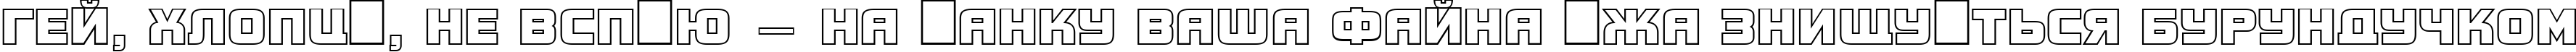 Пример написания шрифтом a_ConceptoTitulOtl текста на украинском